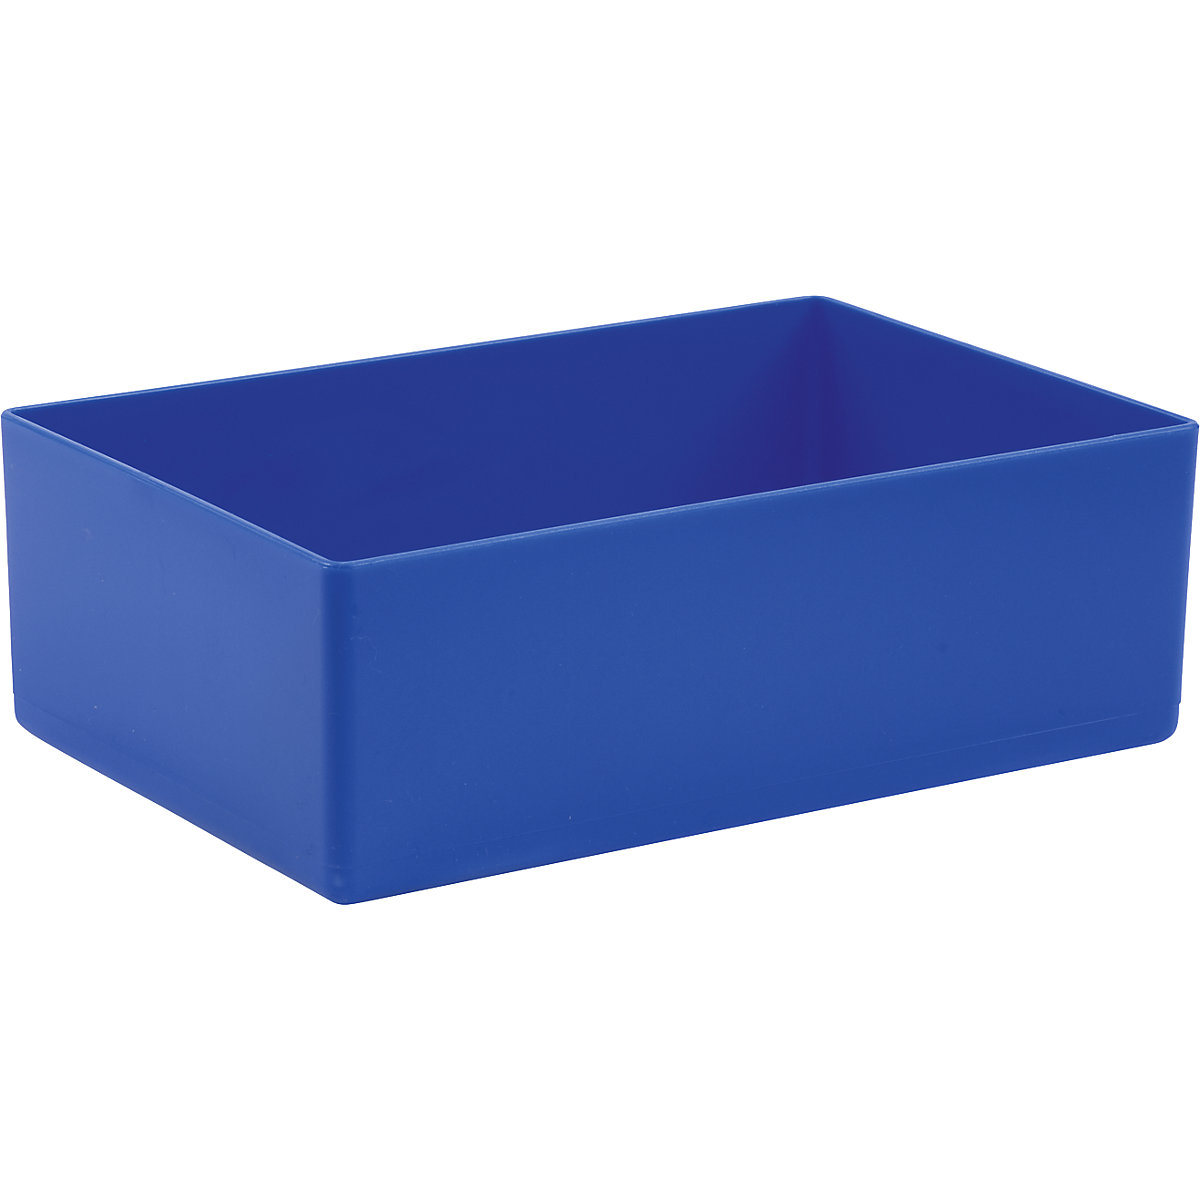 Wkładana skrzynka do szuflady, dł. x szer. x wys. 160 x 106 x 54 mm, opak. 8 szt., niebieskie